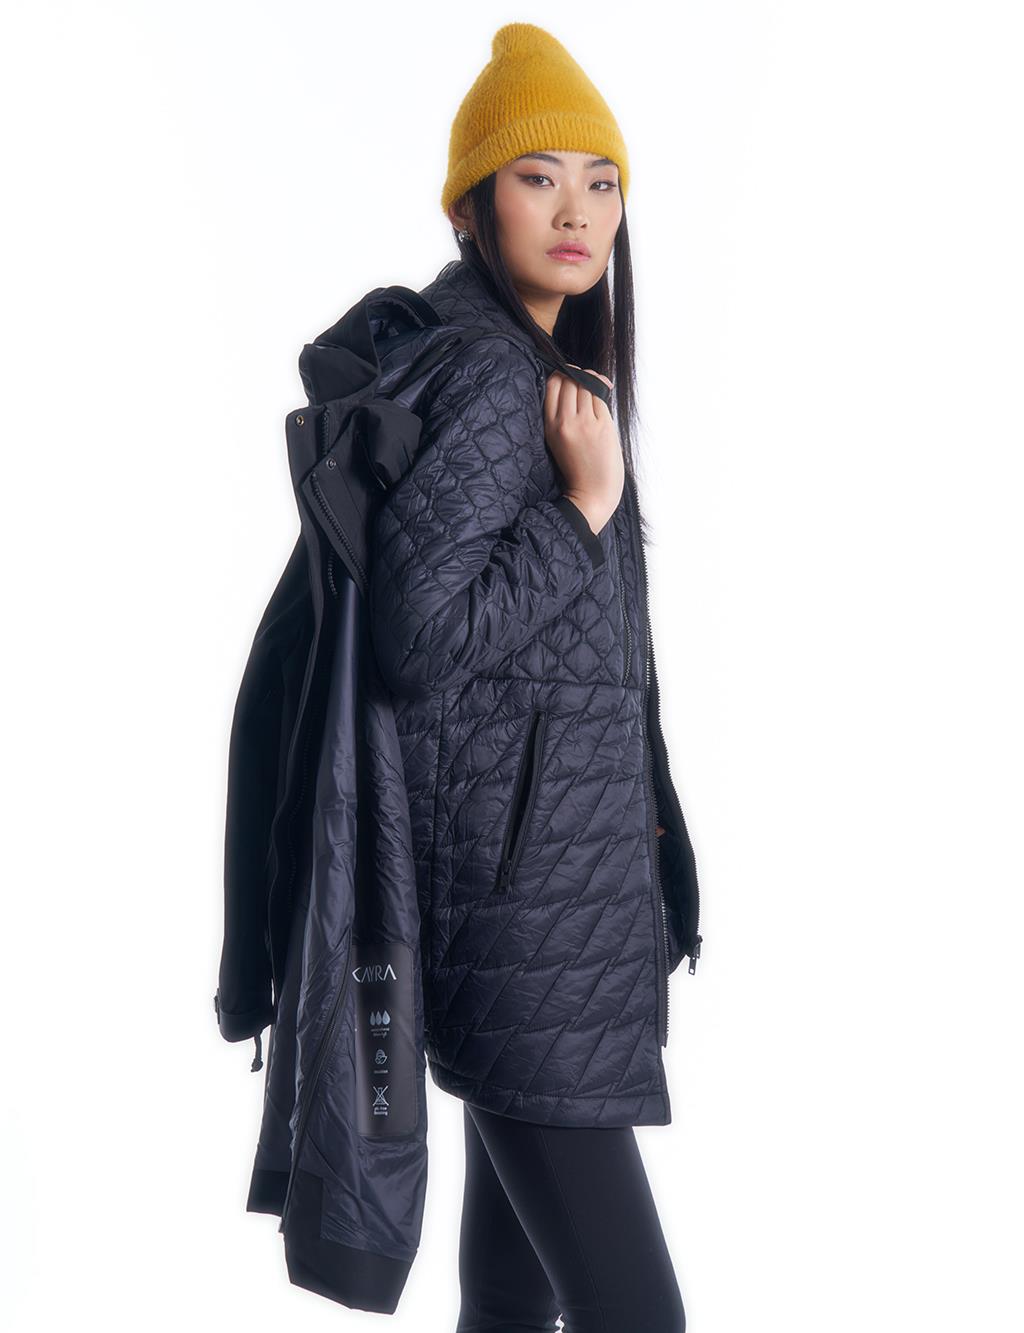 3in1 Multipe Use Coat I Raincoat I Jacket in Black